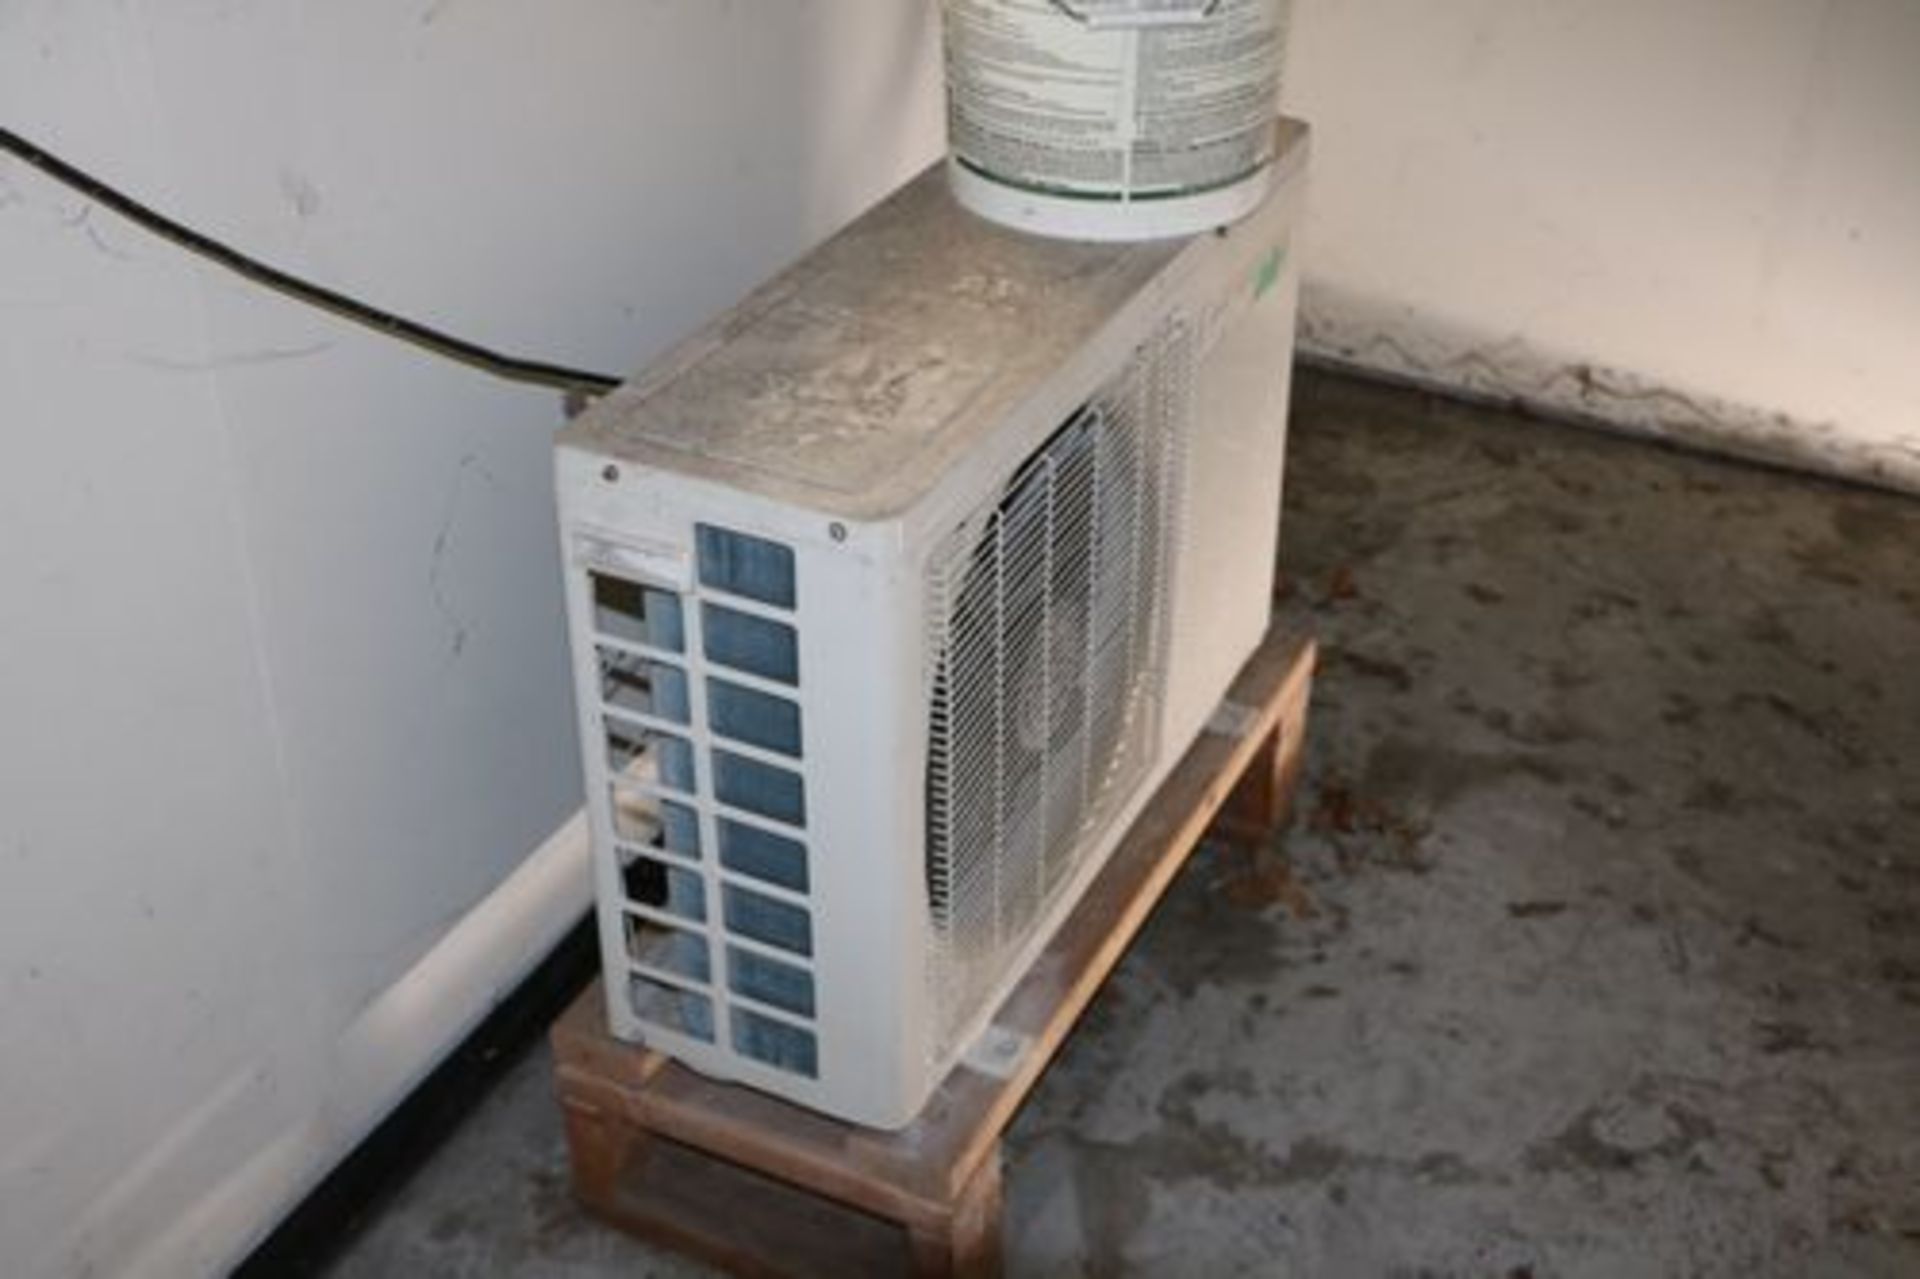 Turbo Air Room Air Conditioner Model TAS-9H, 9000BTU, Indoor Outdoor Split Unit - Image 2 of 4